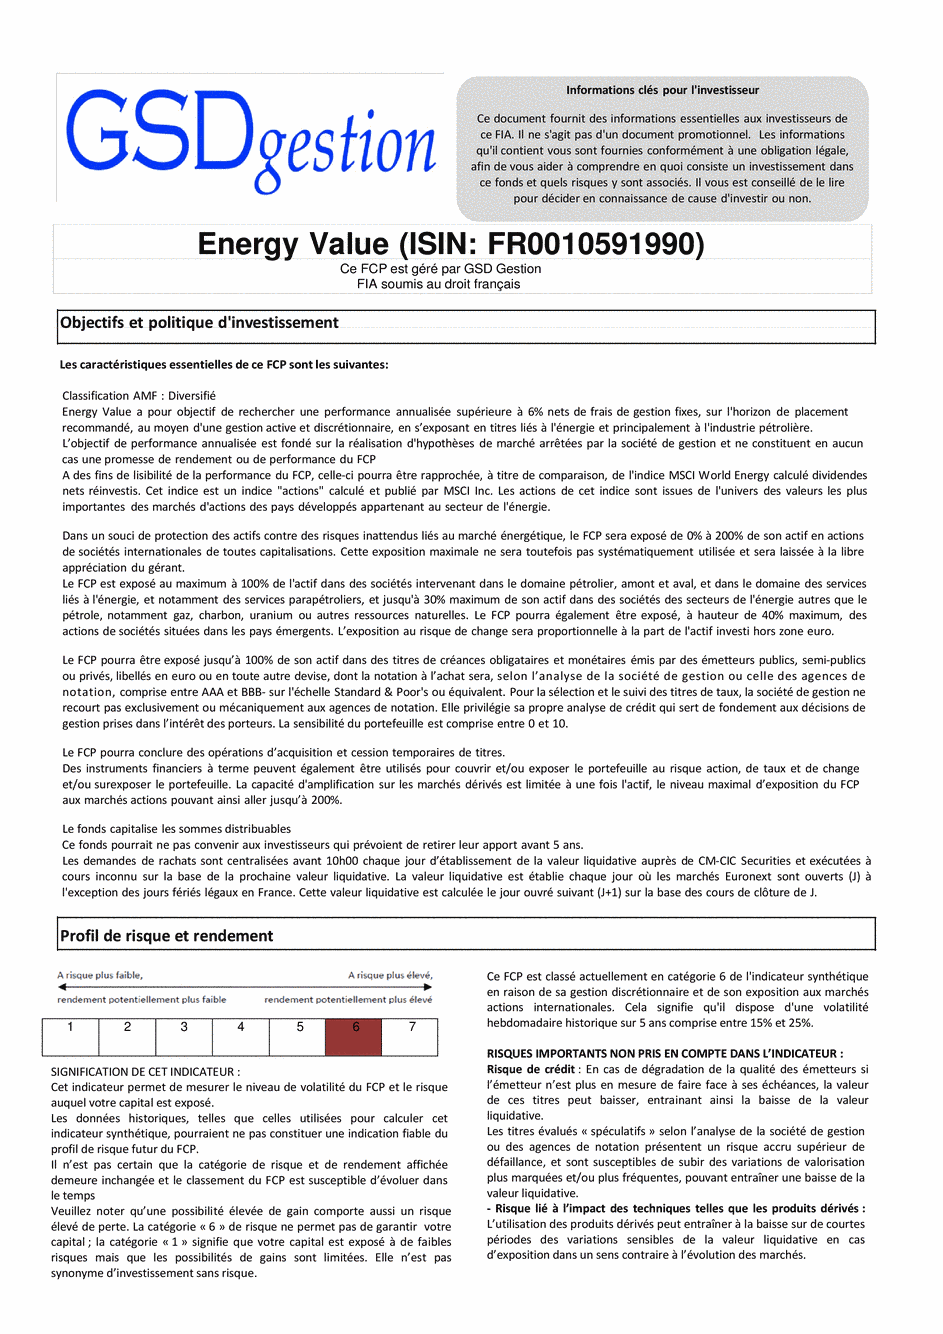 DICI-Prospectus Complet Energy Value - 08/01/2015 - Français